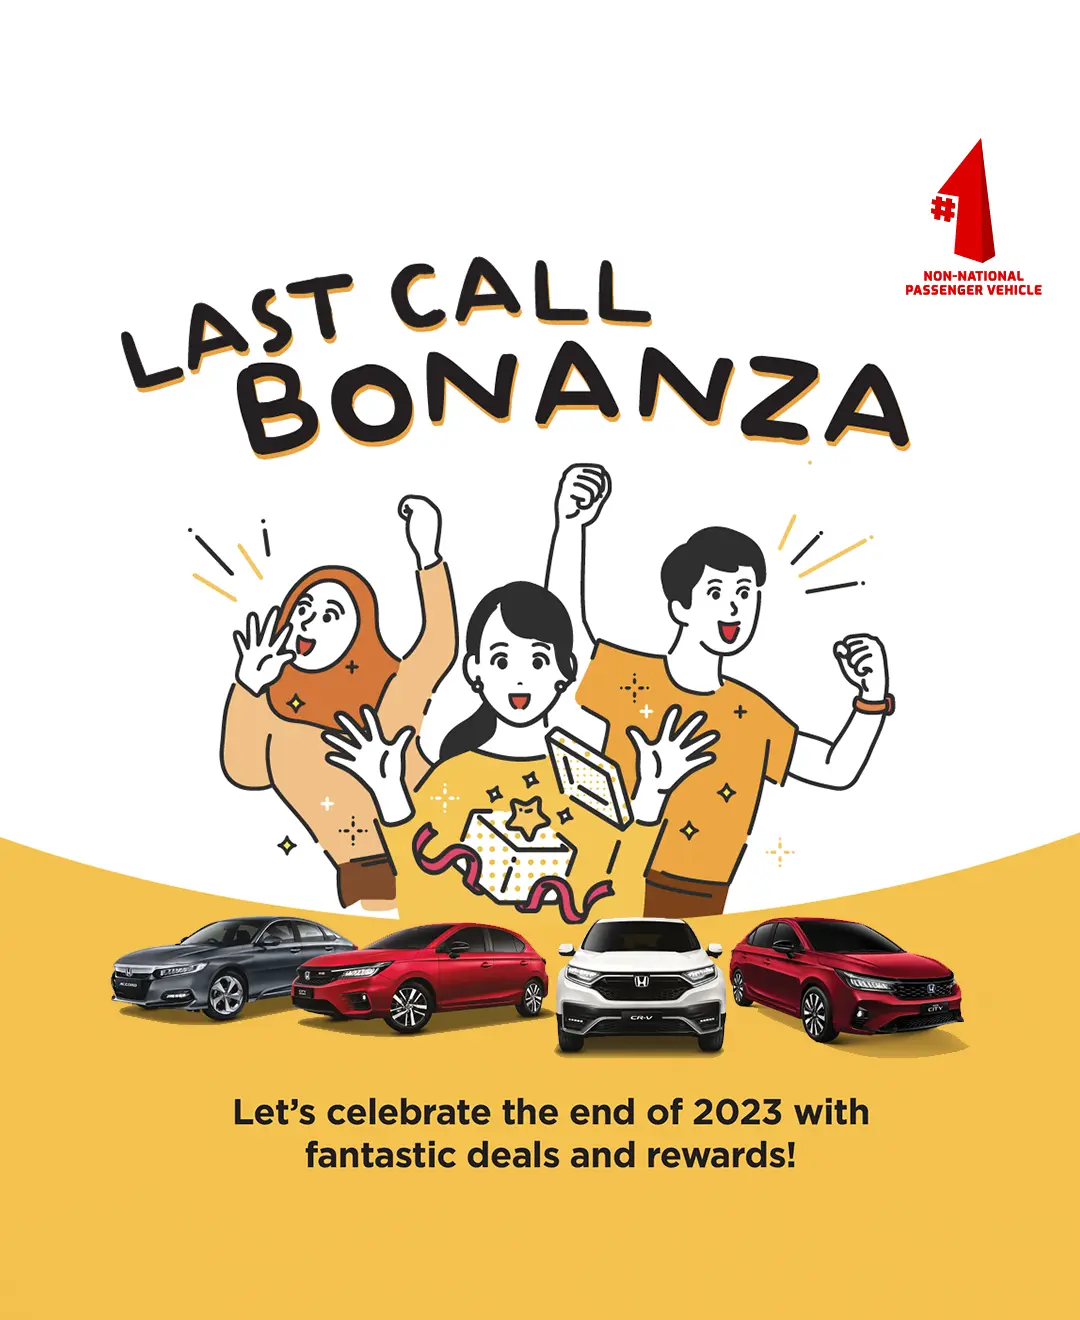 Last Call Bonanza